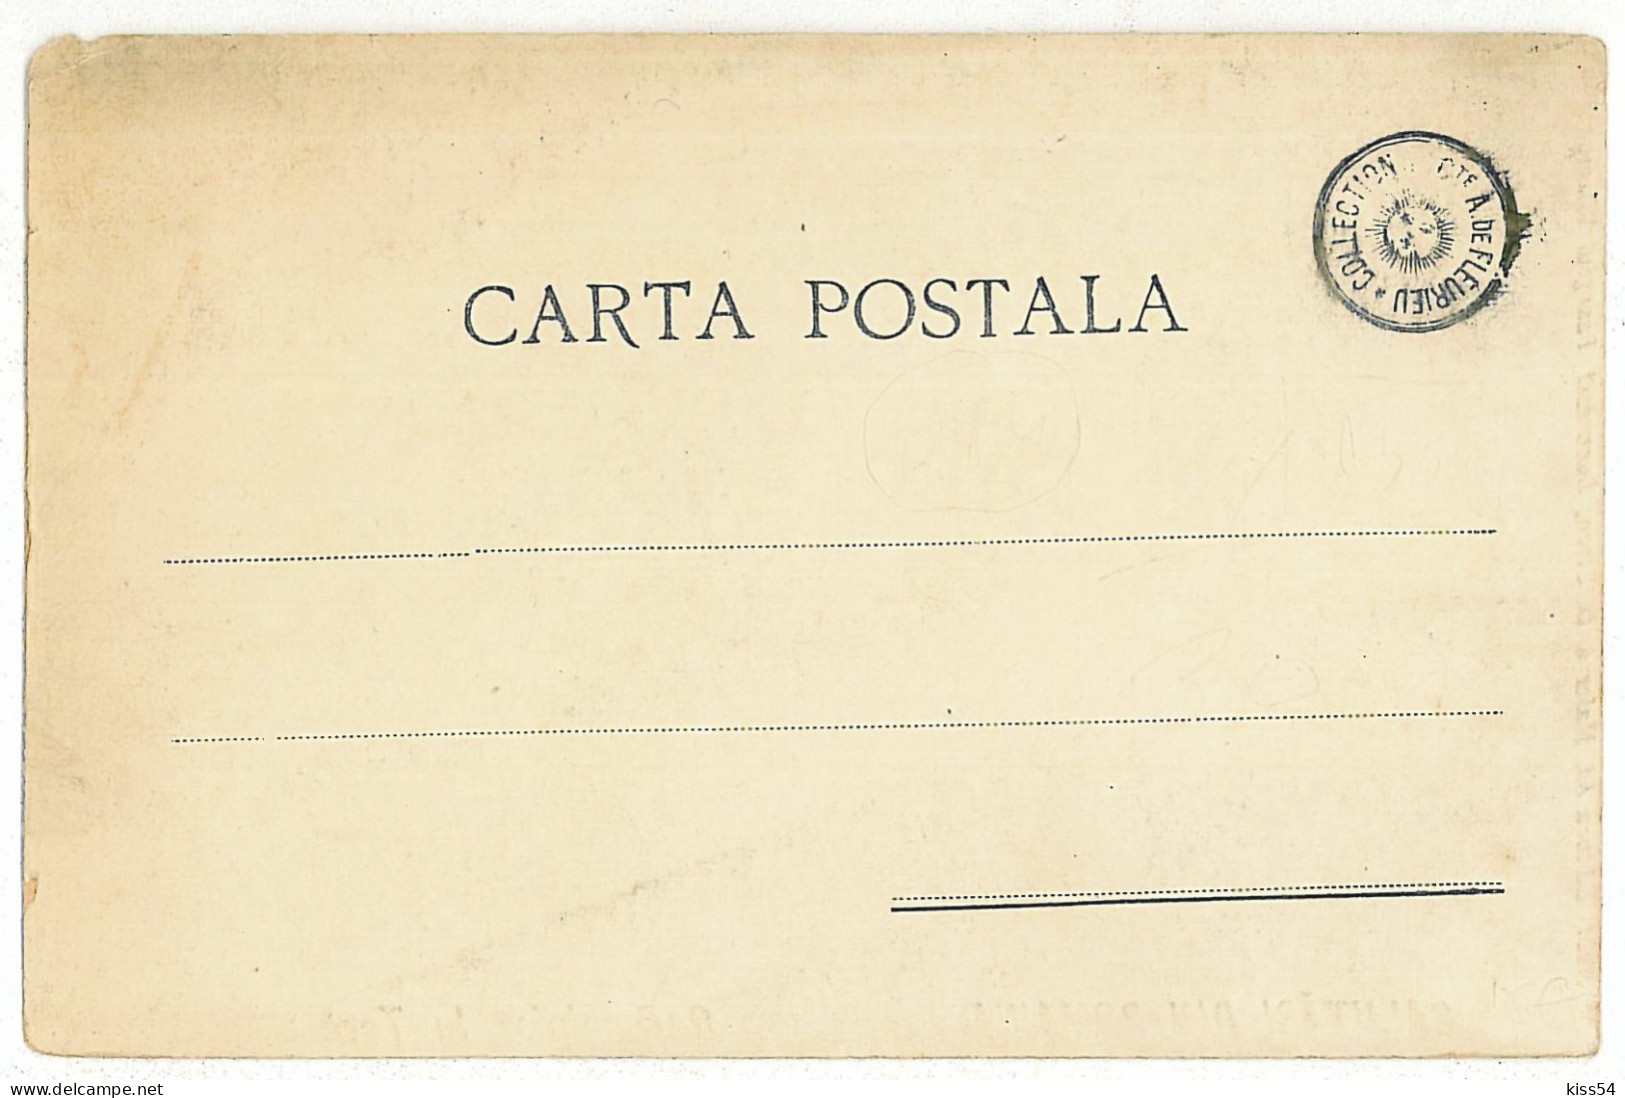 RO 36 - 614 ETHNIC, Hora Dance, Romania - Old Postcard - Unused - Romania